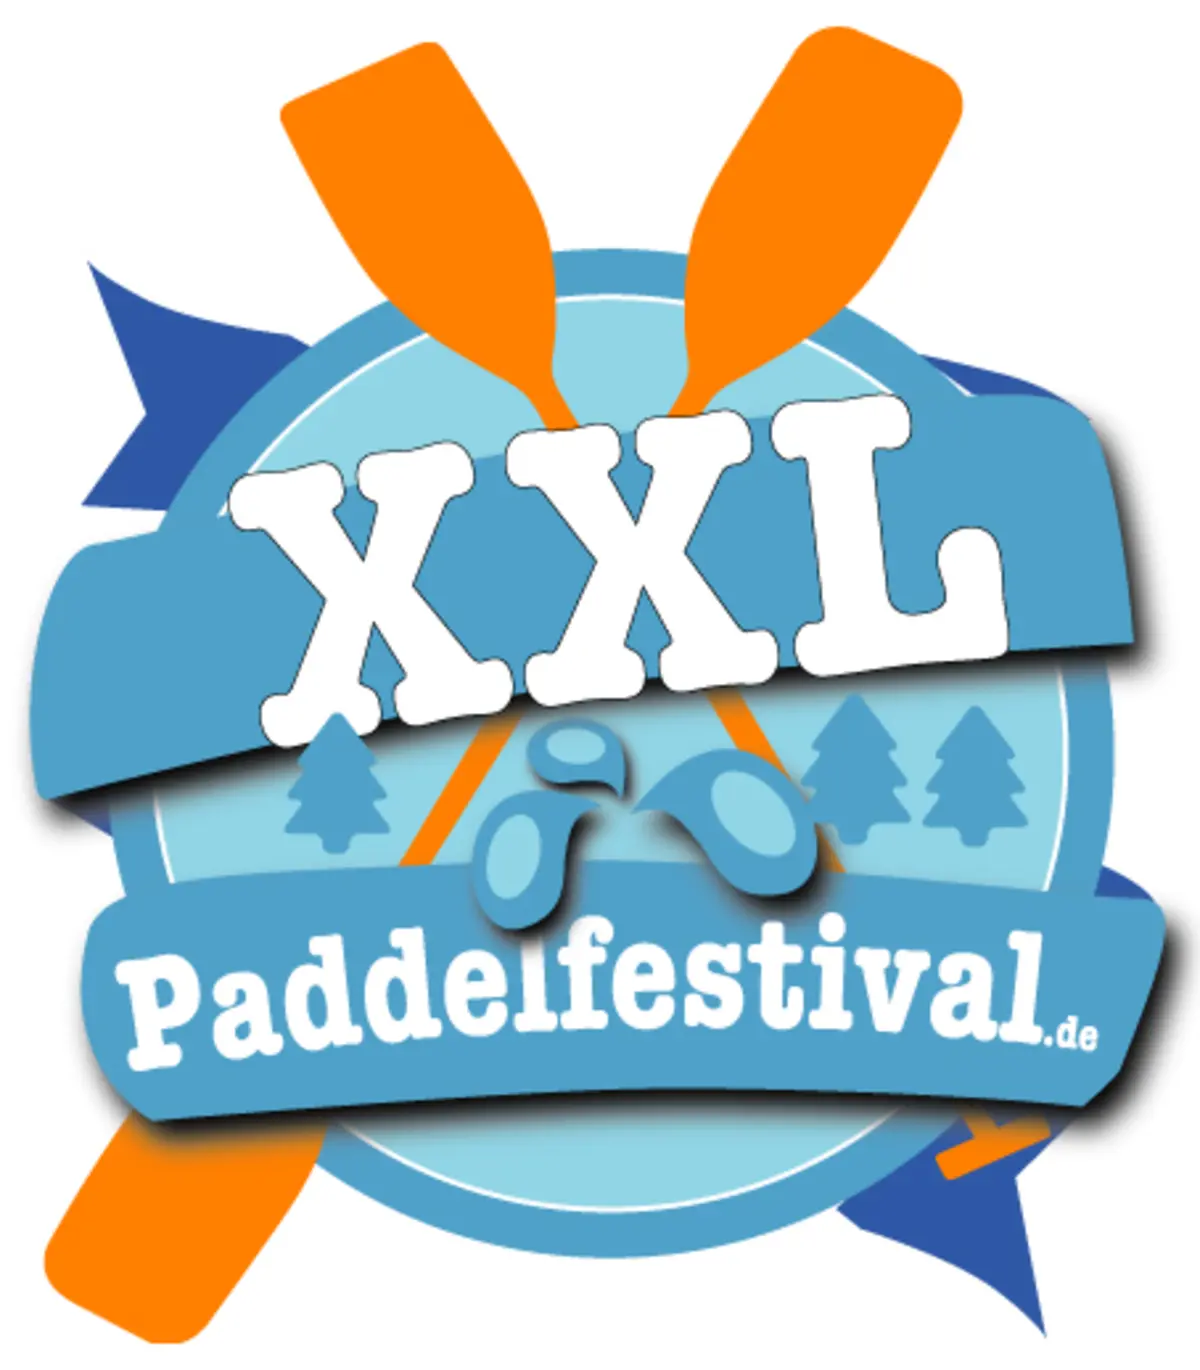 Das Logo des XXL-Paddelfestivals.